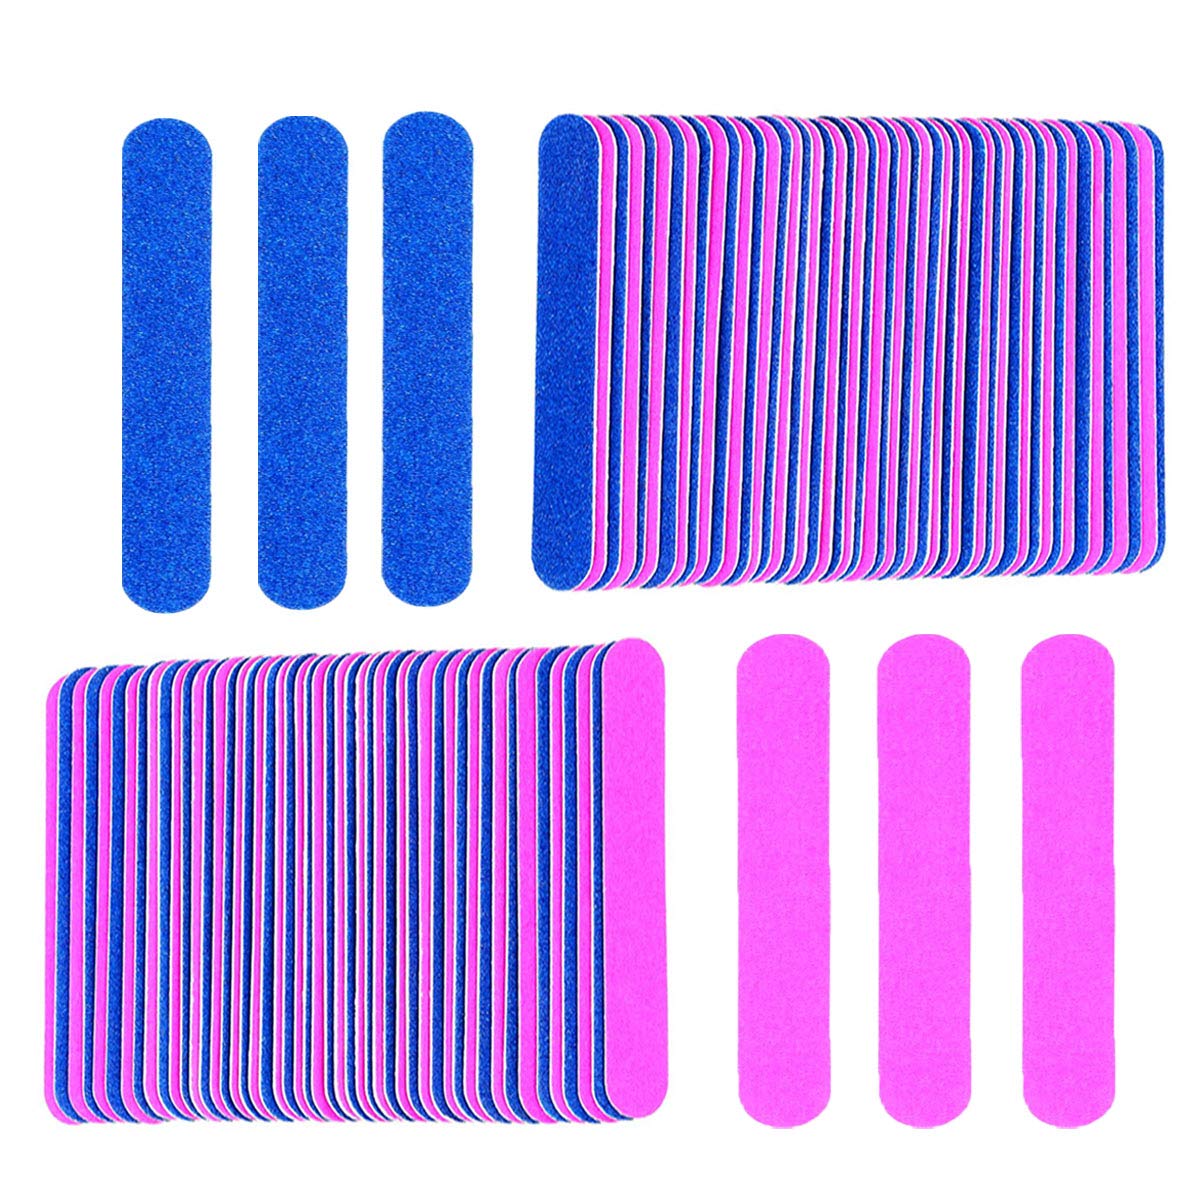 Cardboard Nail Files Mini 100 Pcs Blue & Pink